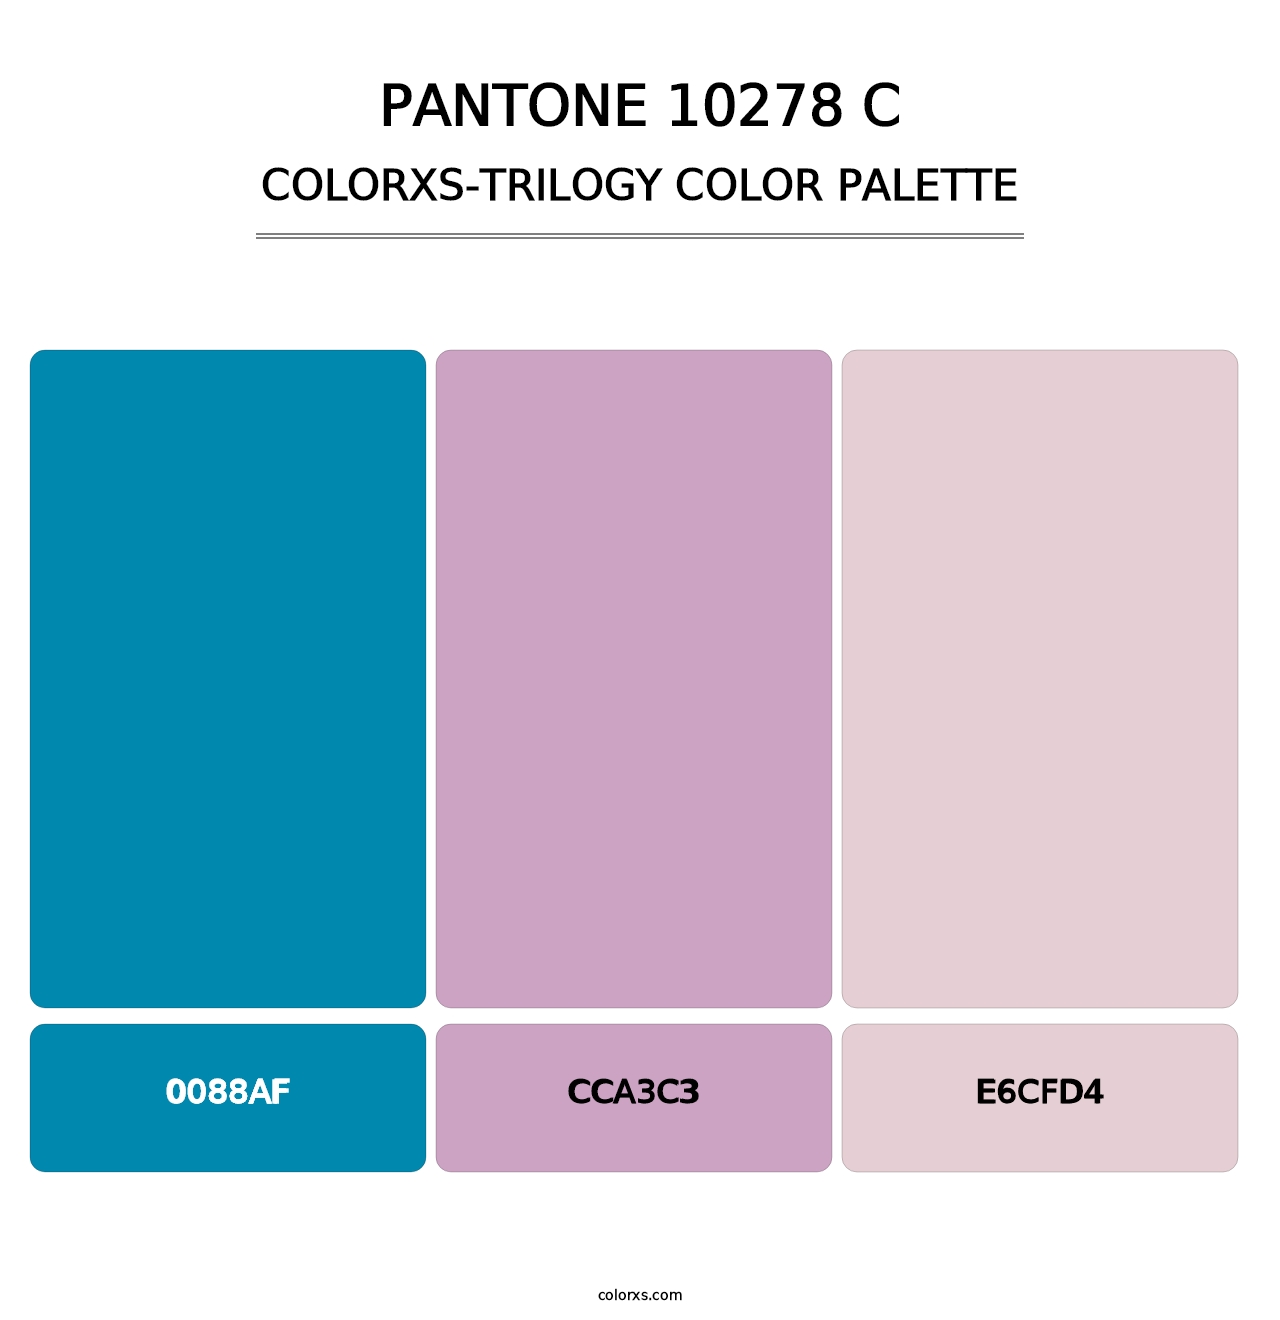 PANTONE 10278 C - Colorxs Trilogy Palette